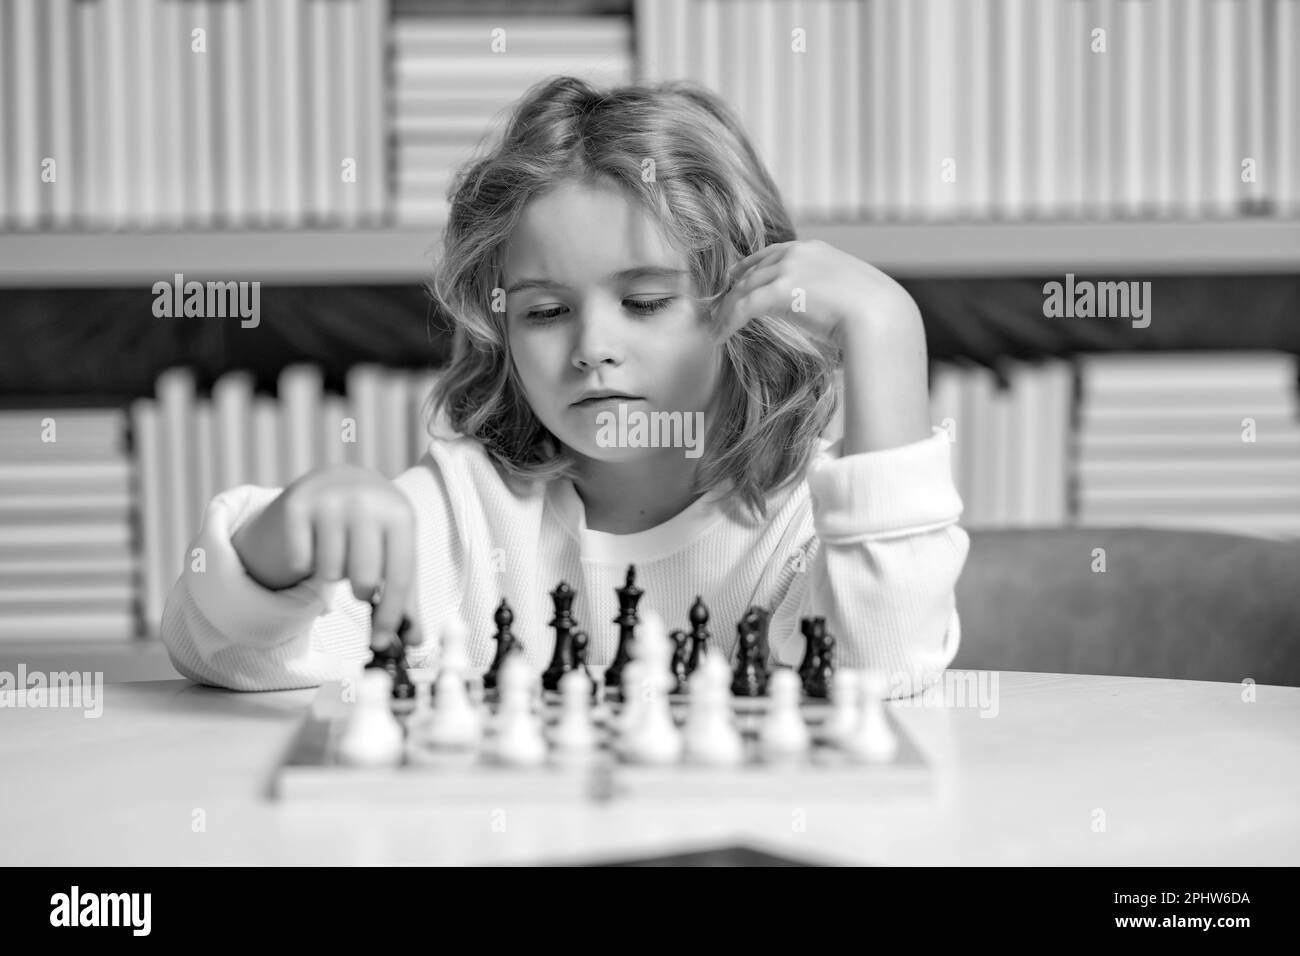 Développement précoce. Garçon pensant aux échecs. Le concept de l'apprentissage et de la croissance des enfants. Échecs, succès et victoire. Banque D'Images